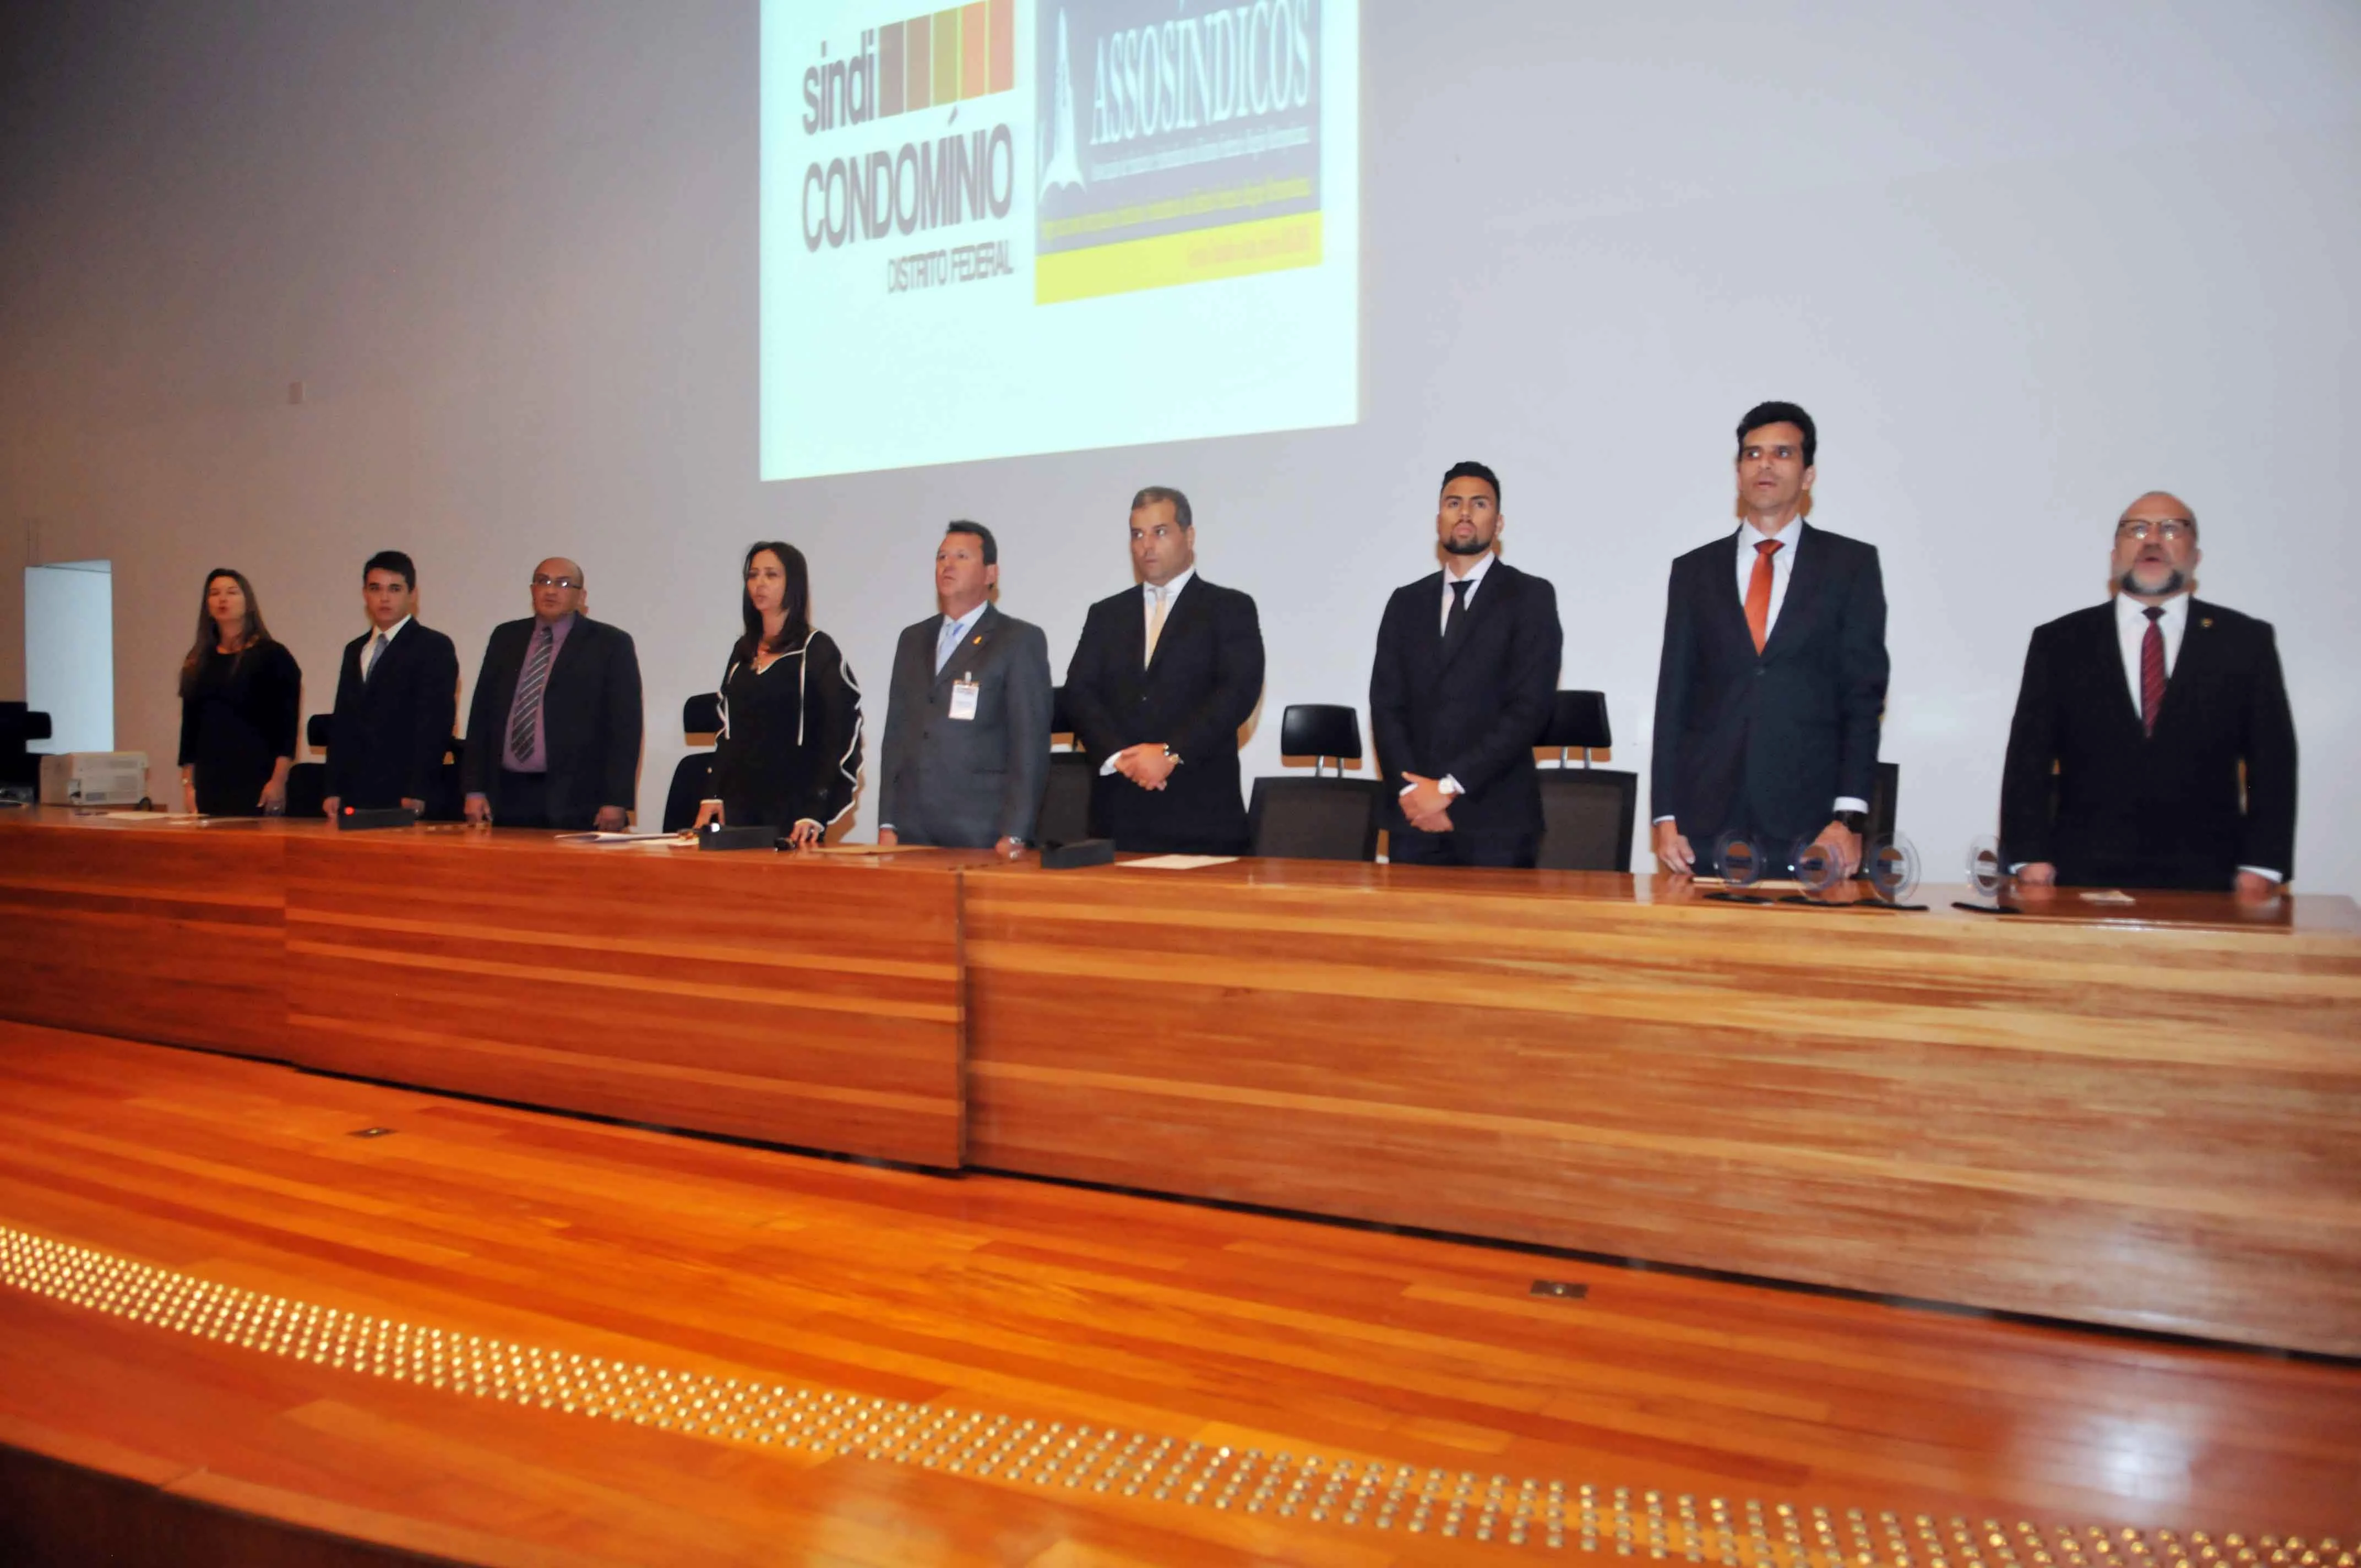 Diretoria da Assosindicos DF prestigia cerimônia de lançamento do Selo de Certificação de Qualidade. Presidente Paulo Melo foi convidado especial para compor a mesa